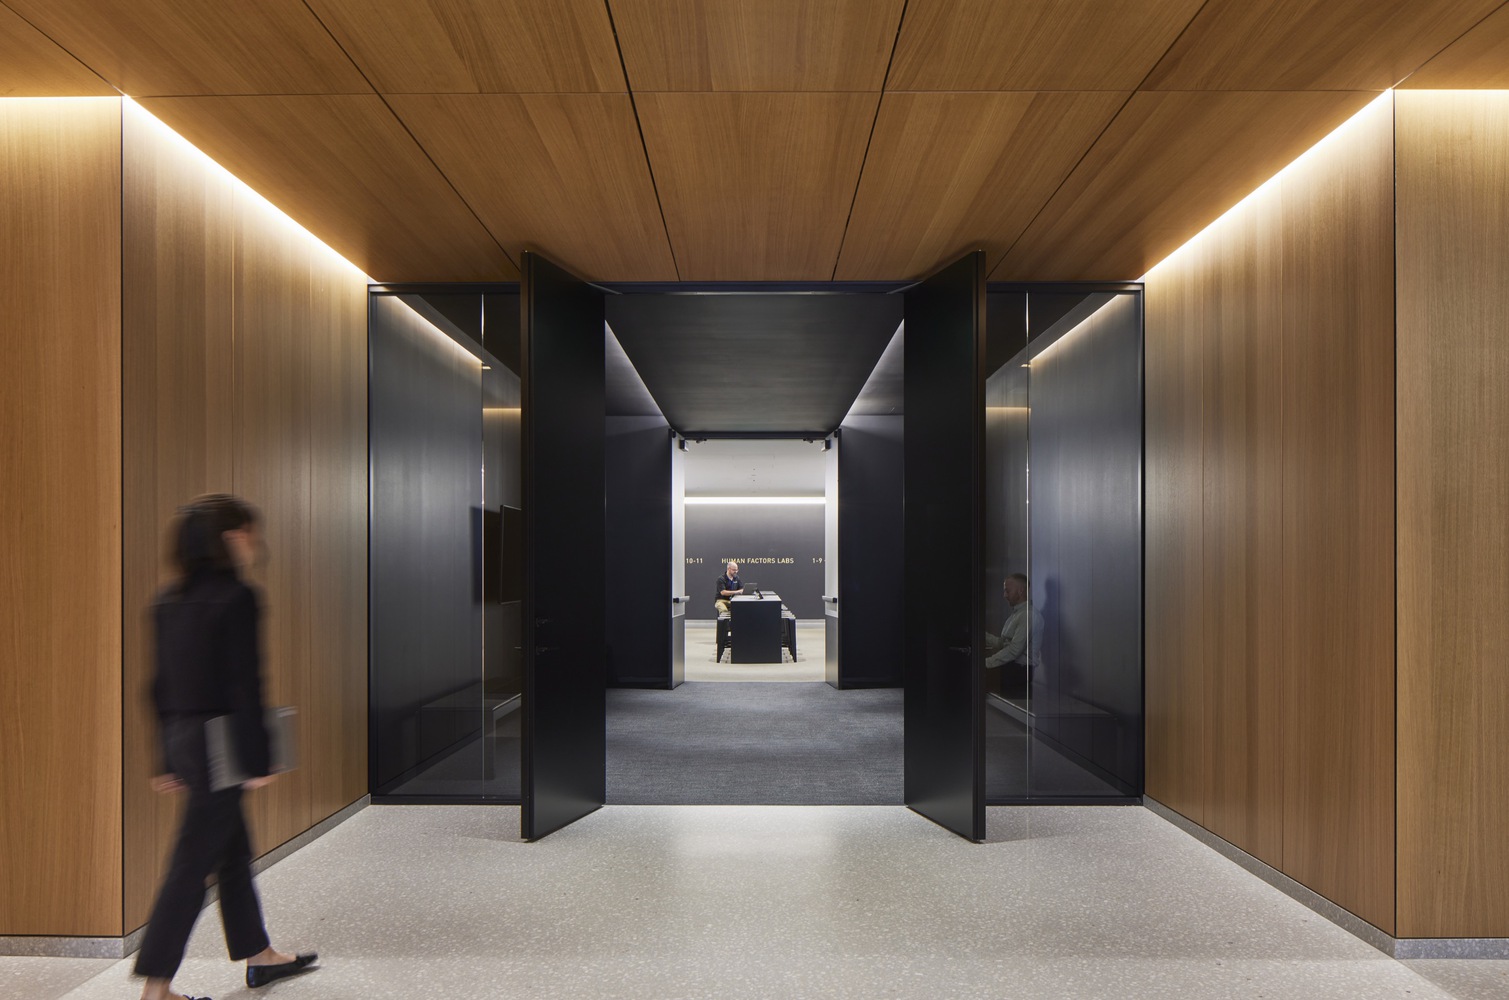 شرکت معماری اس او ام  با همکاری آتلیه Ten، این مرکز جدید را برای داشتن عملکرد بالا در تاب آوری و پایداری طراحی کرد.